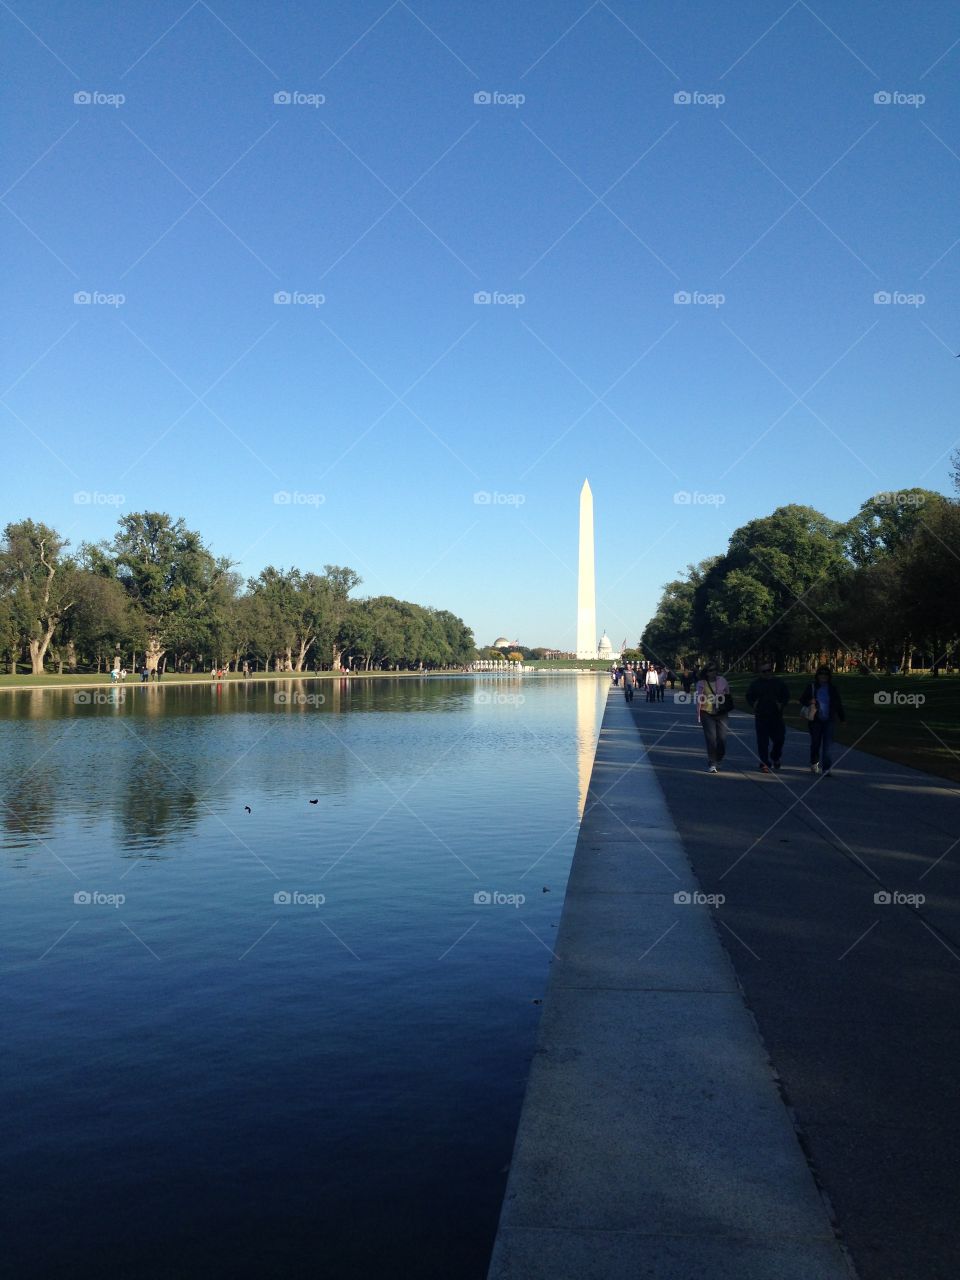 The Washington National monument